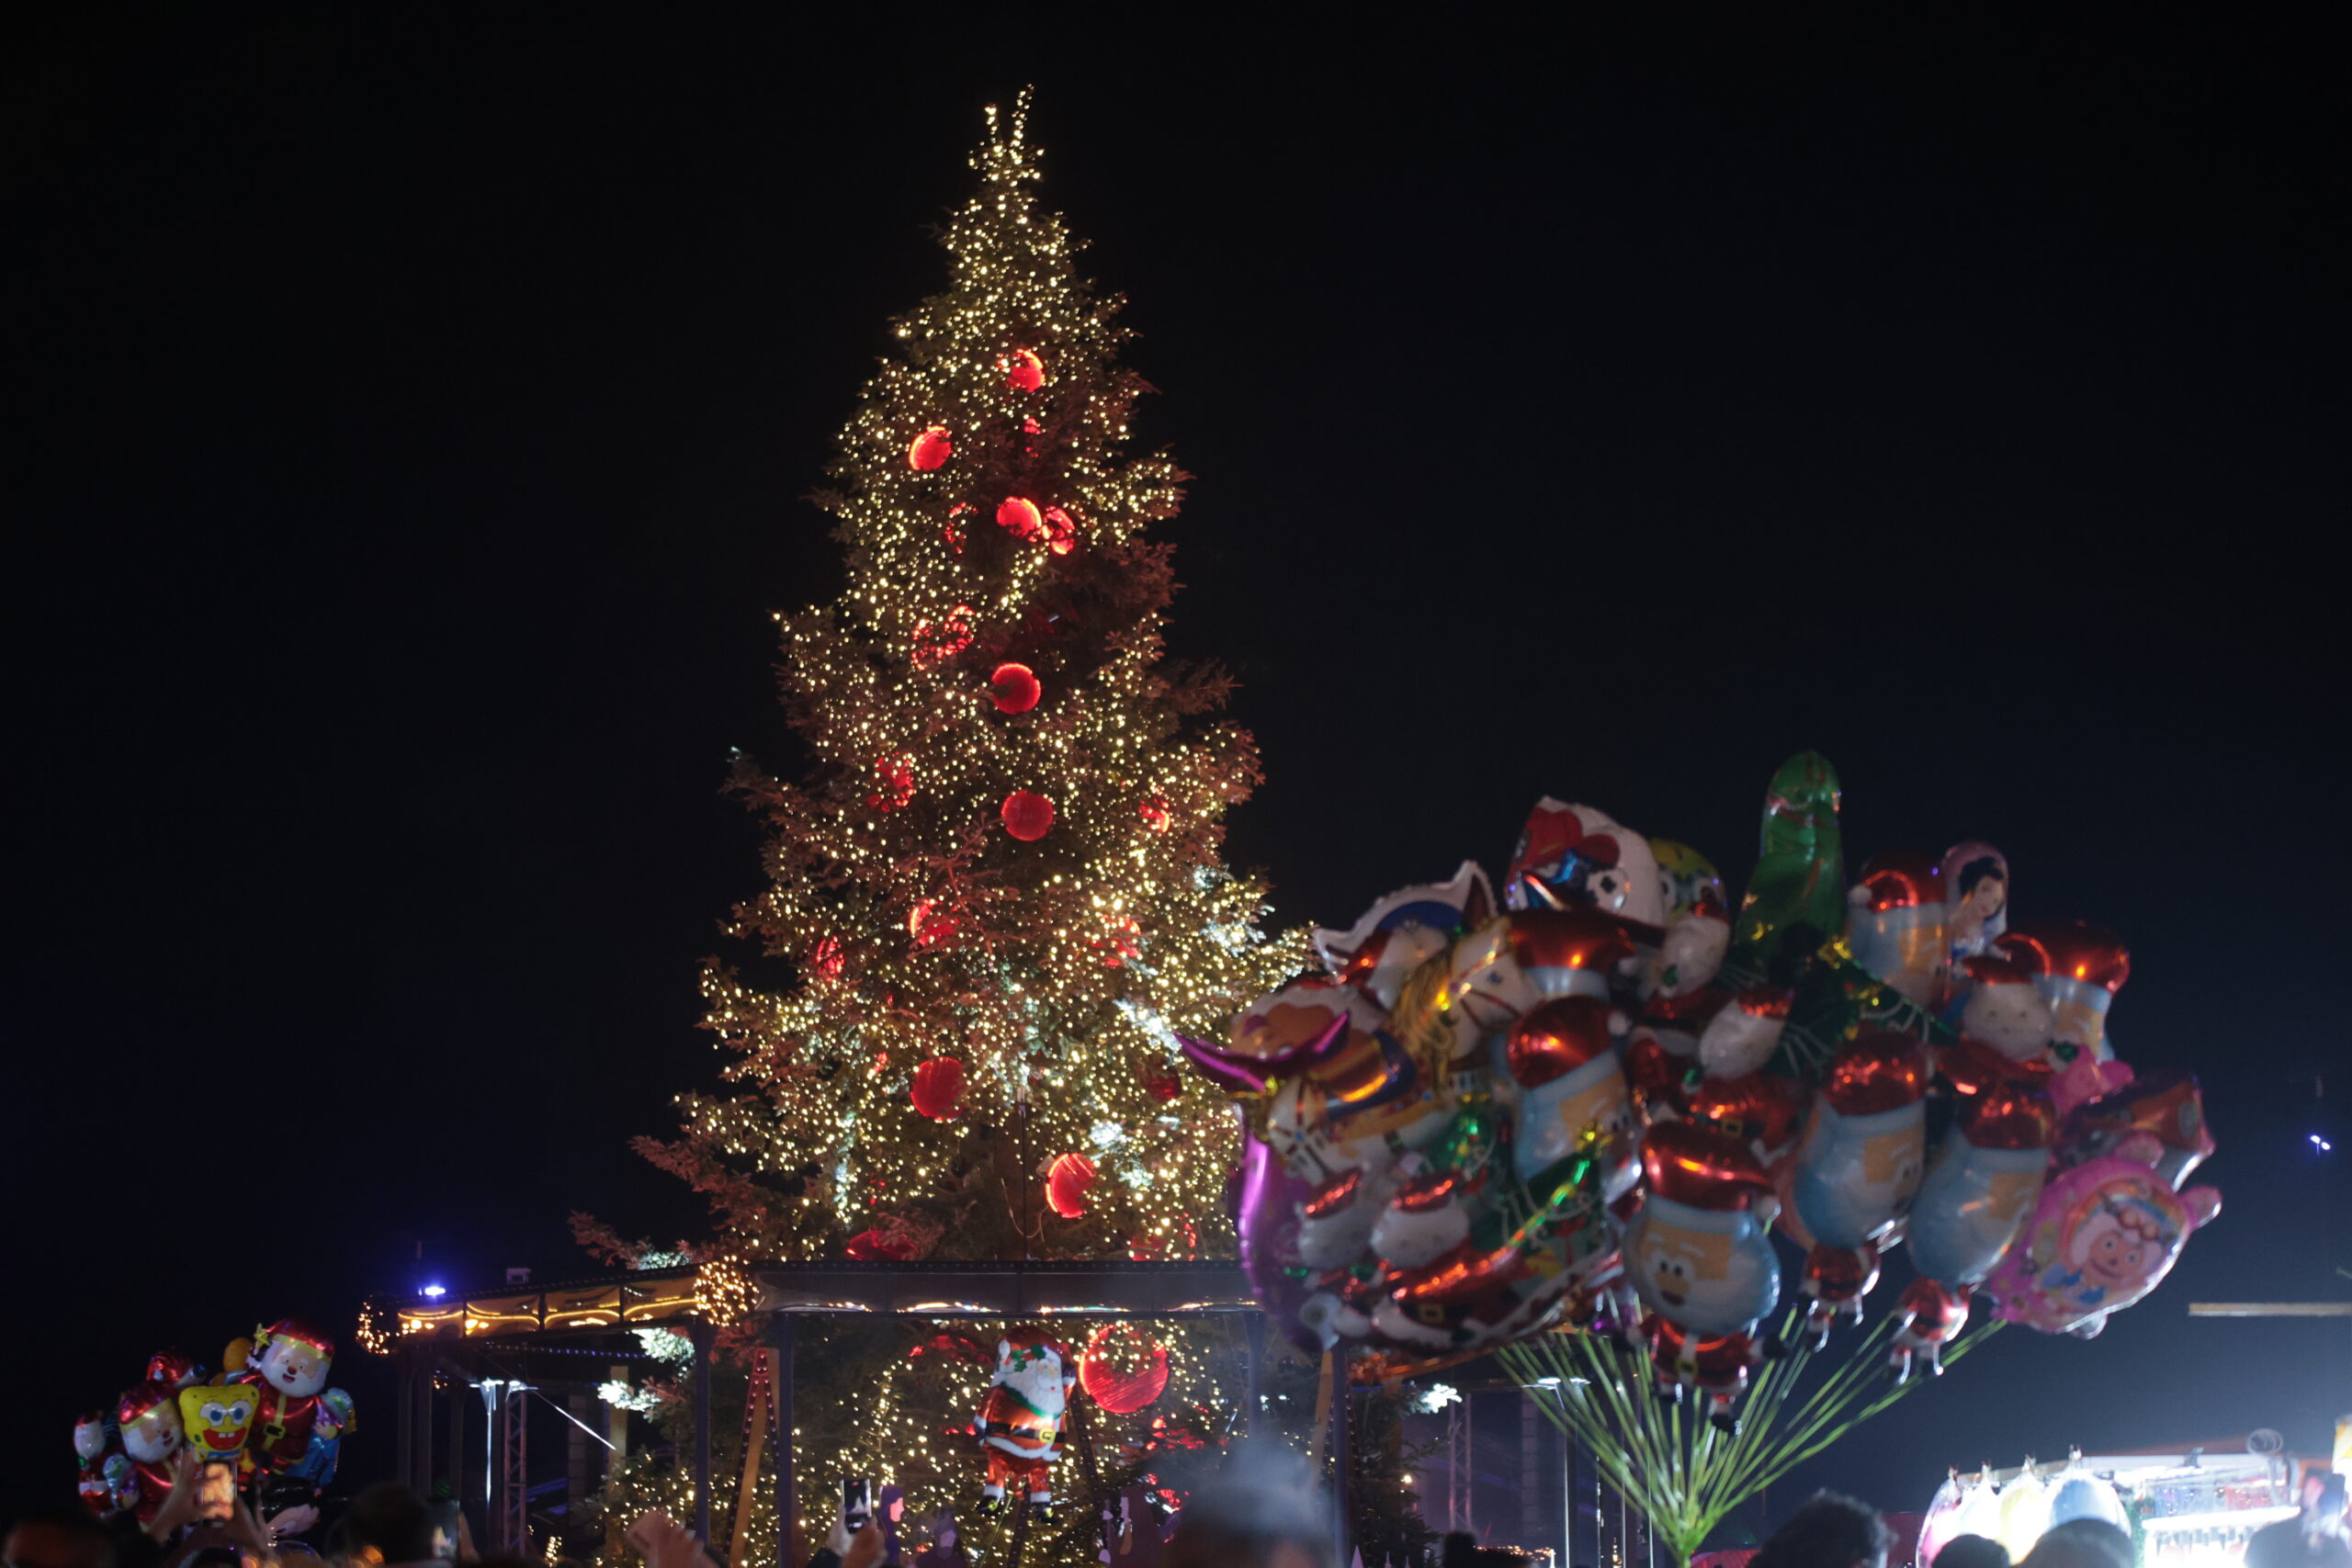 Θεσσαλονίκη: Στην πλατεία Αριστοτέλους το ύψους 17 μέτρων χριστουγεννιάτικο έλατο- Στις 7/12 η φωταγώγησή του